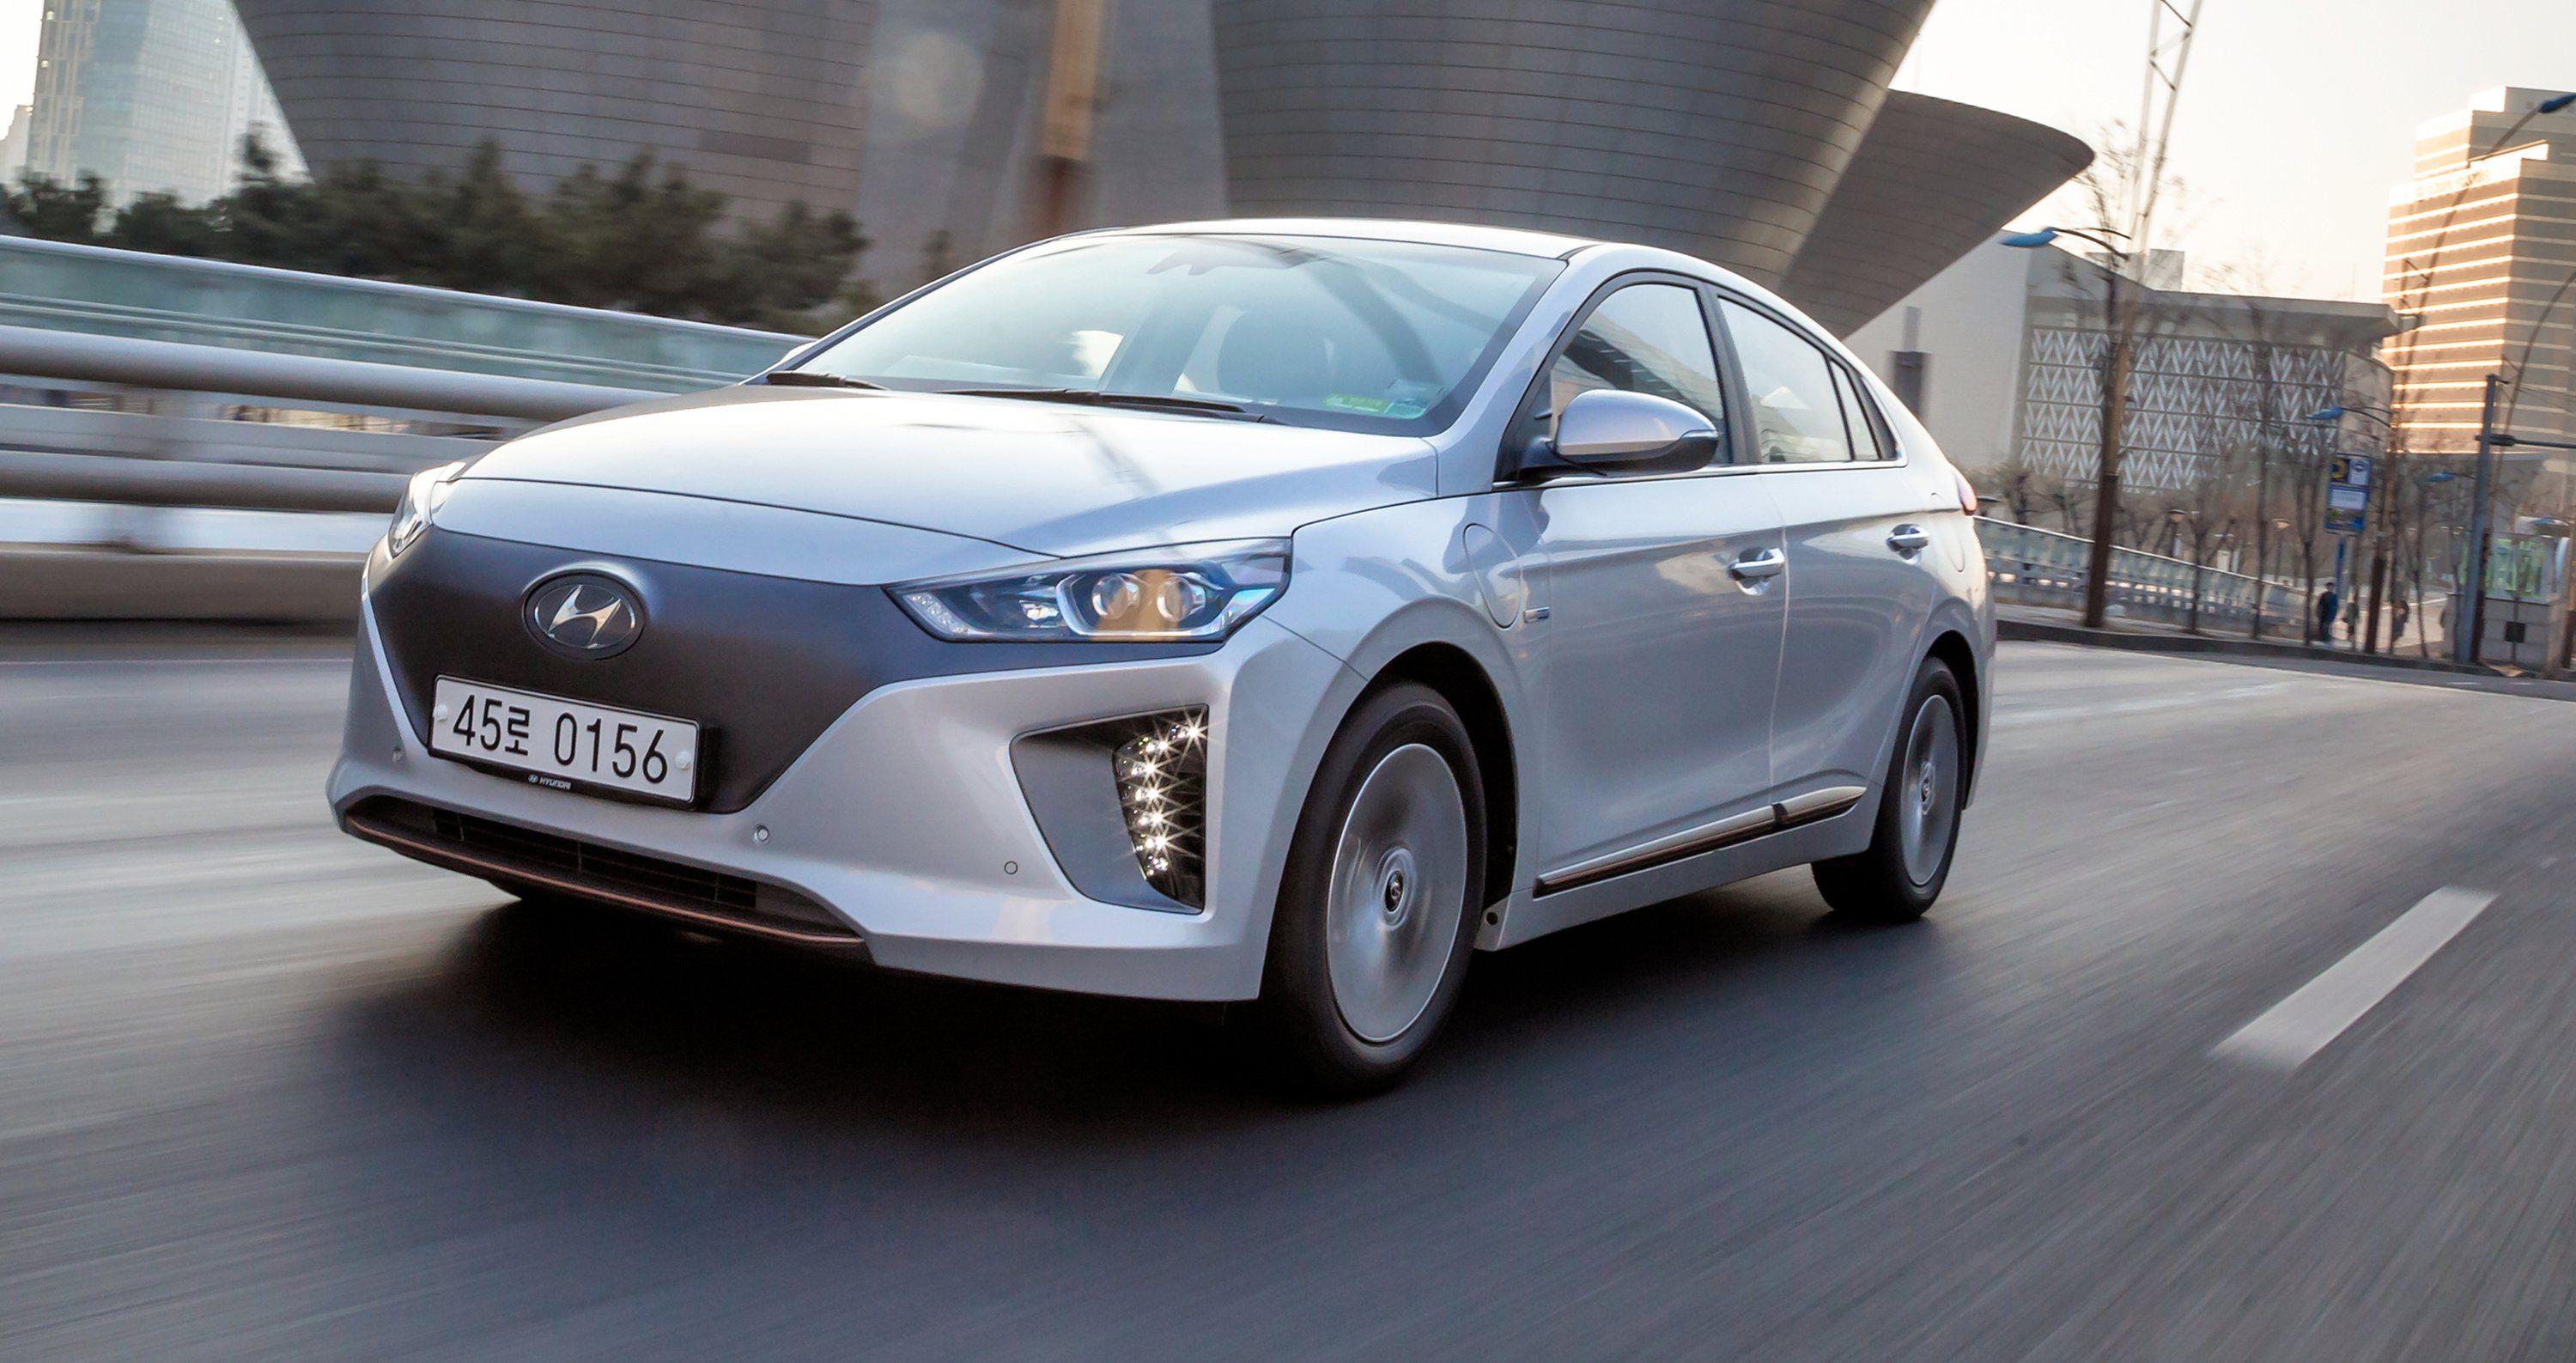 Hyundai Ioniq hybrid, PHEV and EV expected